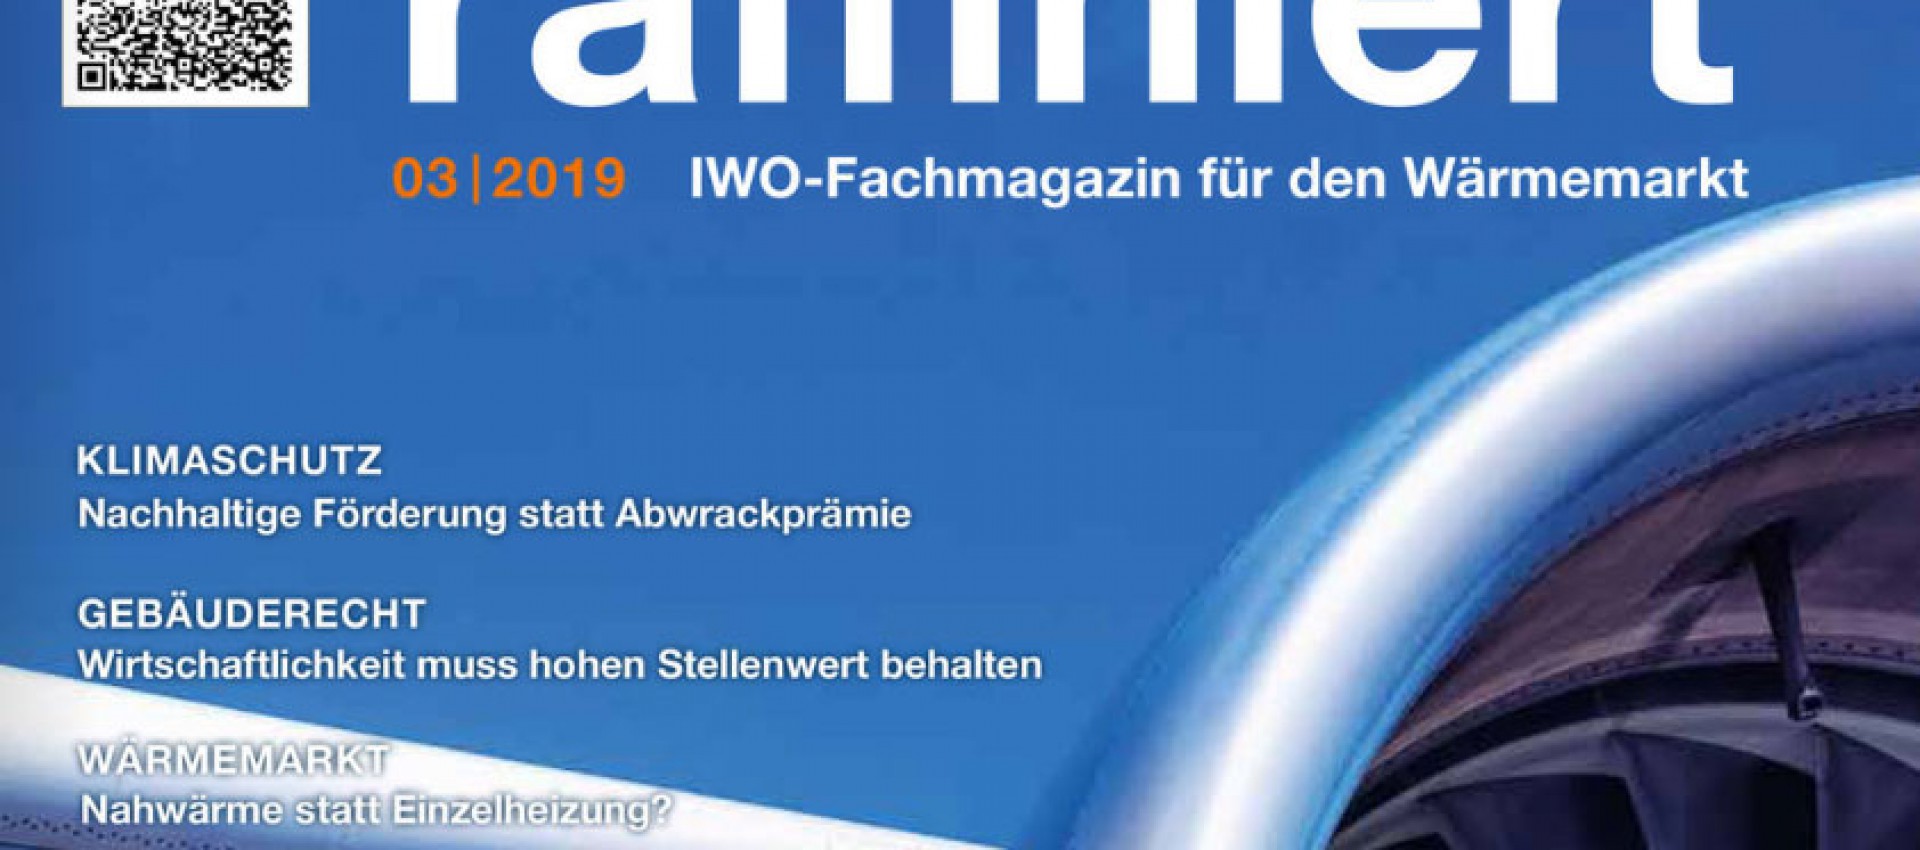 raffiniert - IWO-Fachmagazin für den Wärmemarkt online